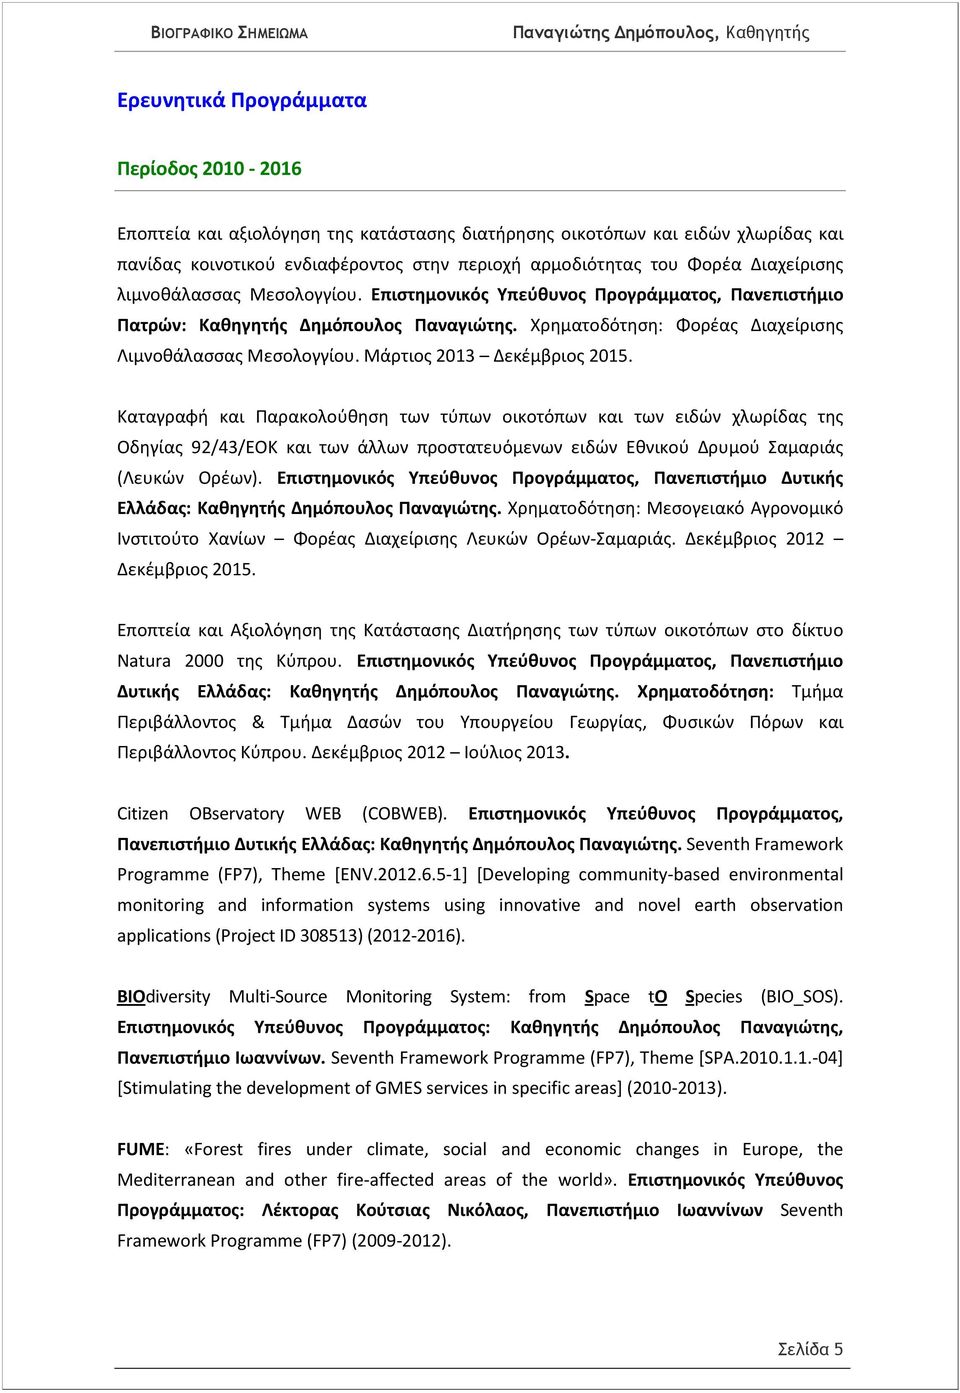 Μάρτιος 2013 Δεκέμβριος 2015. Καταγραφή και Παρακολούθηση των τύπων οικοτόπων και των ειδών χλωρίδας της Οδηγίας 92/43/ΕΟΚ και των άλλων προστατευόμενων ειδών Εθνικού Δρυμού Σαμαριάς (Λευκών Ορέων).